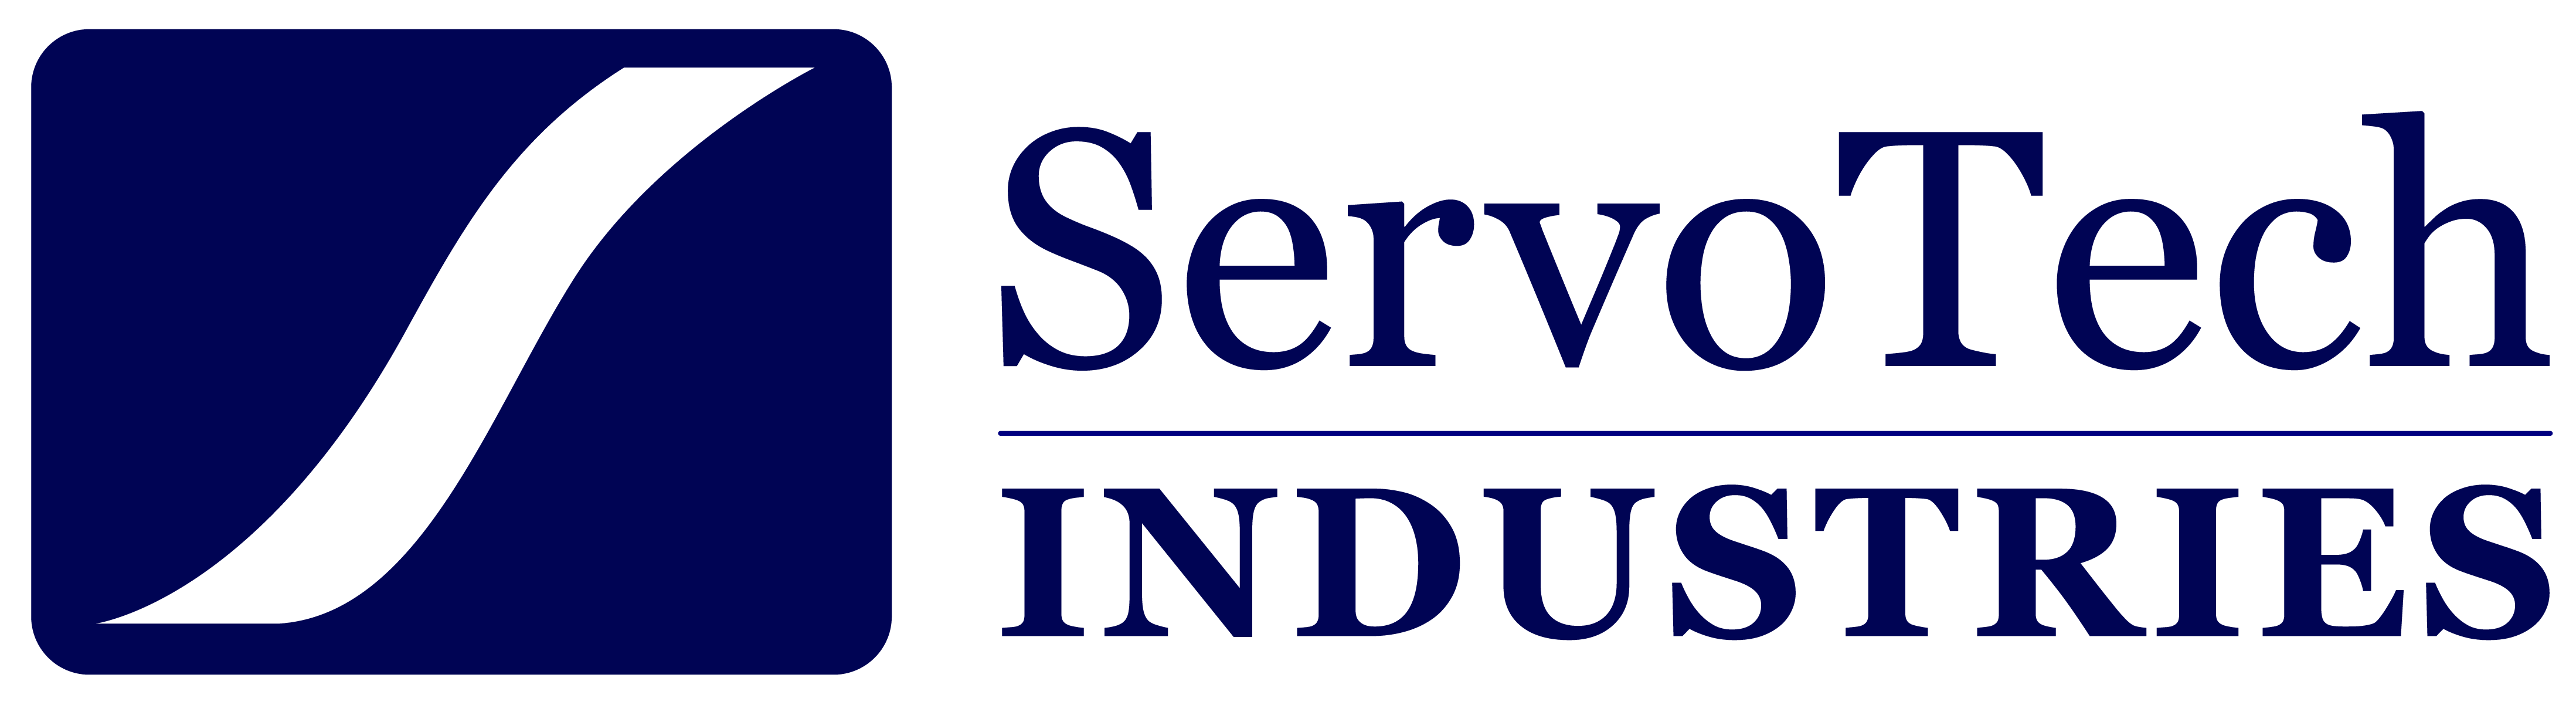 Servotech Industries